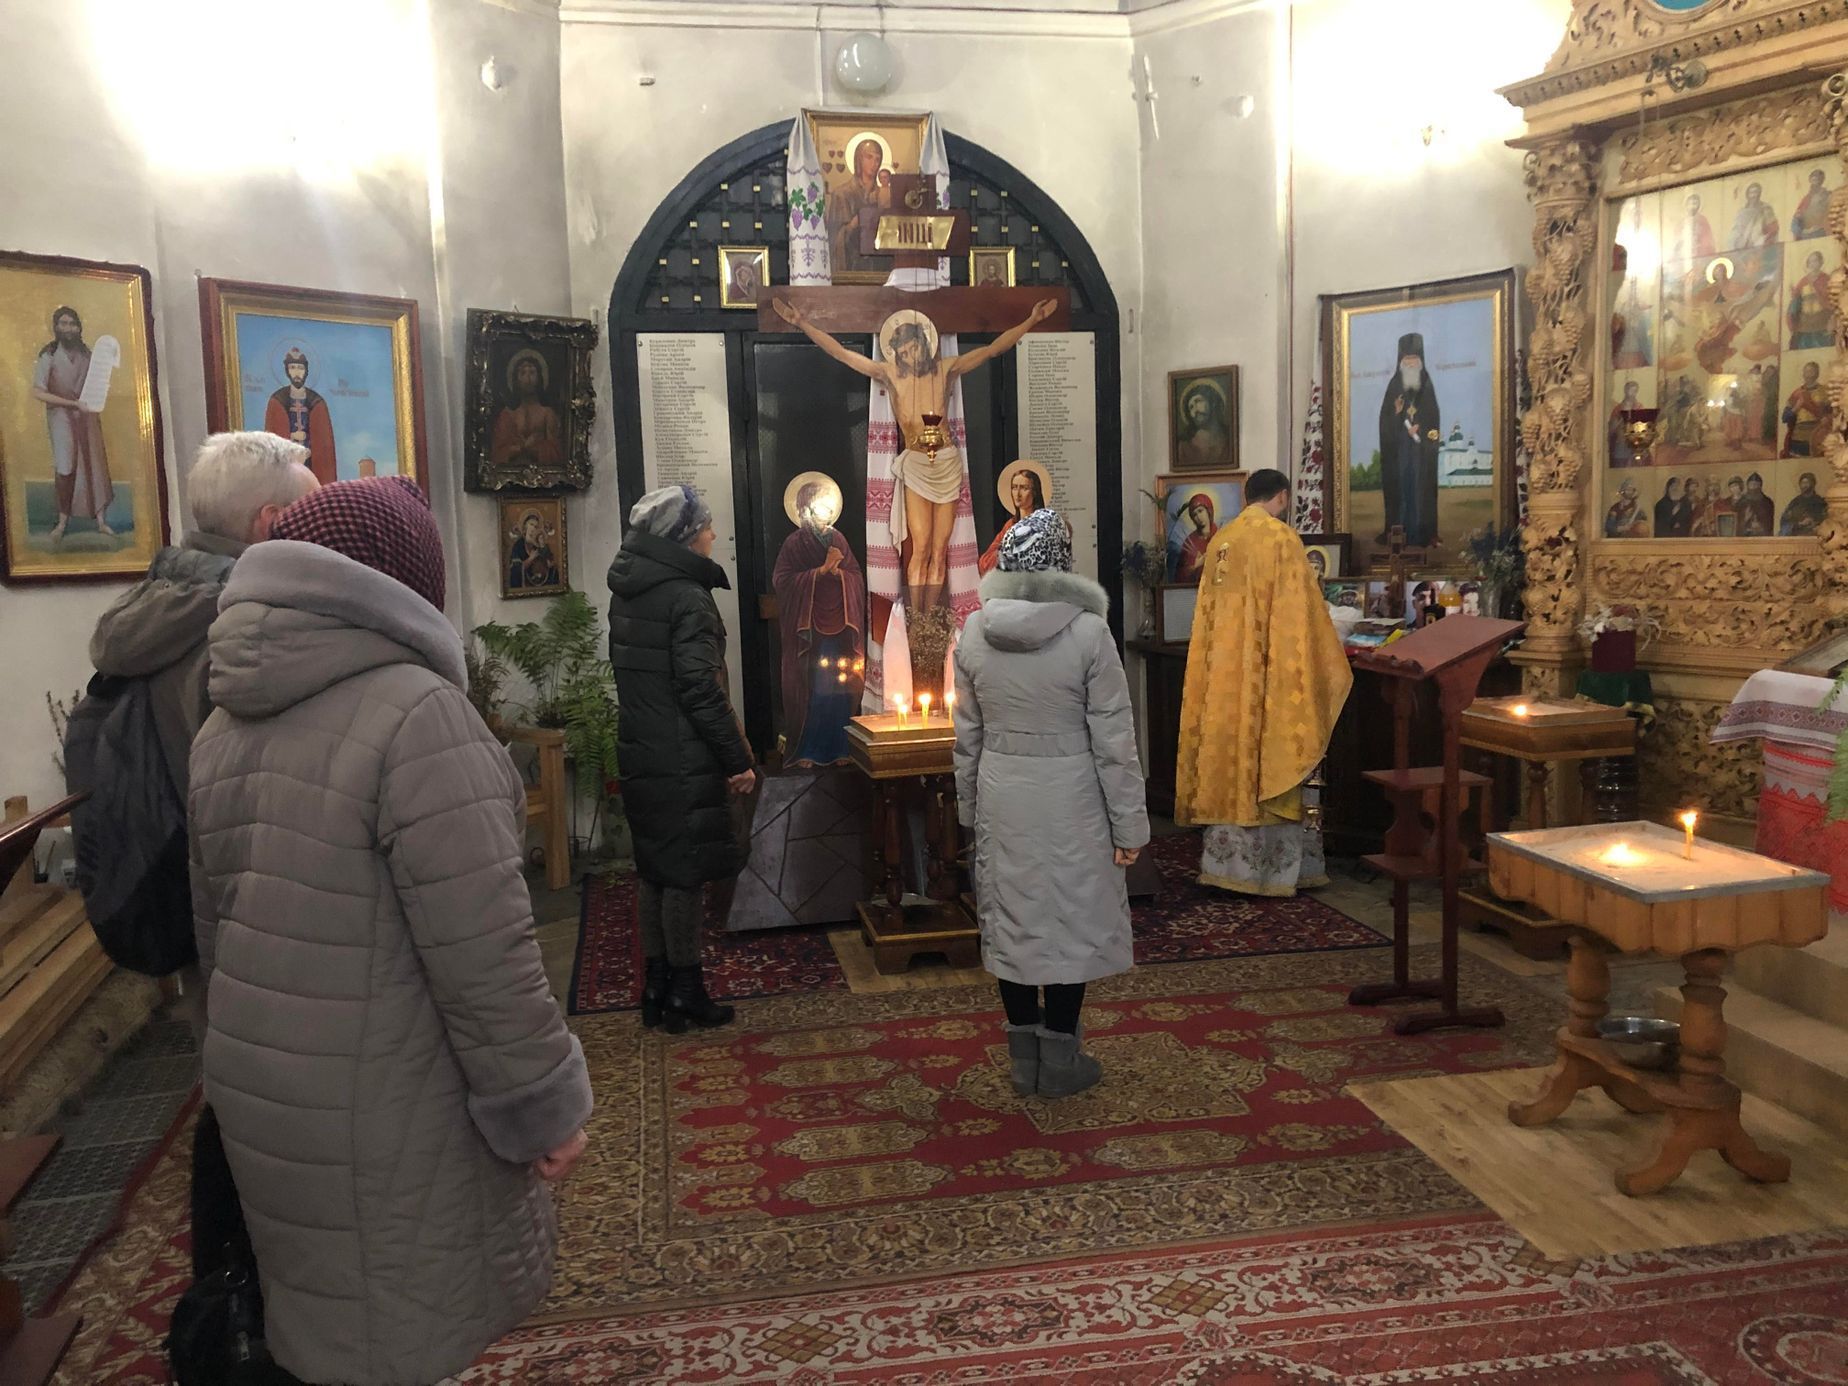 Panychida za zemřelé vojáky v pravoslavném kostele v Černihivu. Za křížem v pozadí jsou seznamy obětí z města a okolí od vypuknutí války v roce 2014.